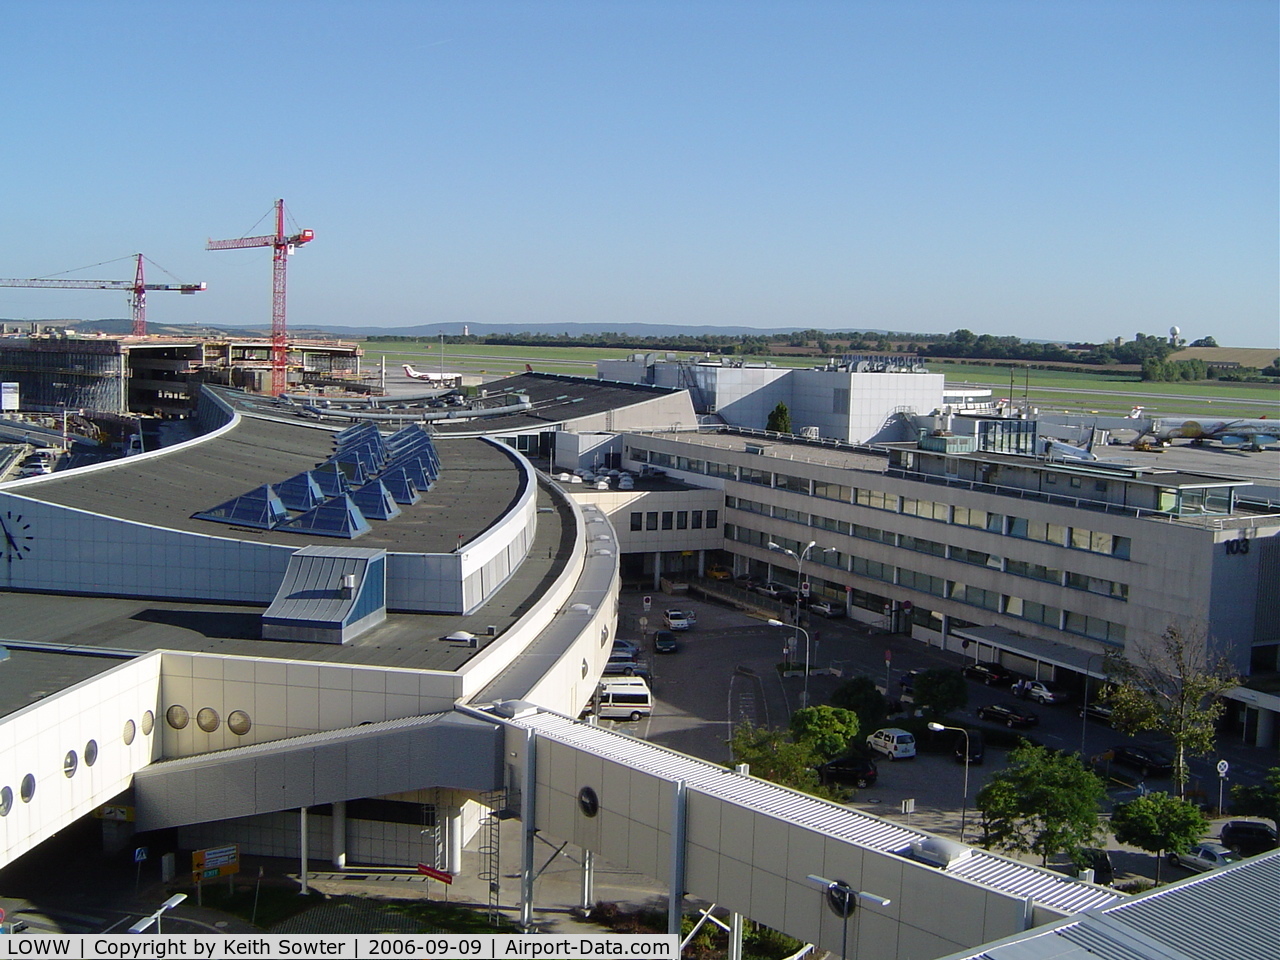 Vienna International Airport, Vienna Austria (LOWW) - Taken from viewing area